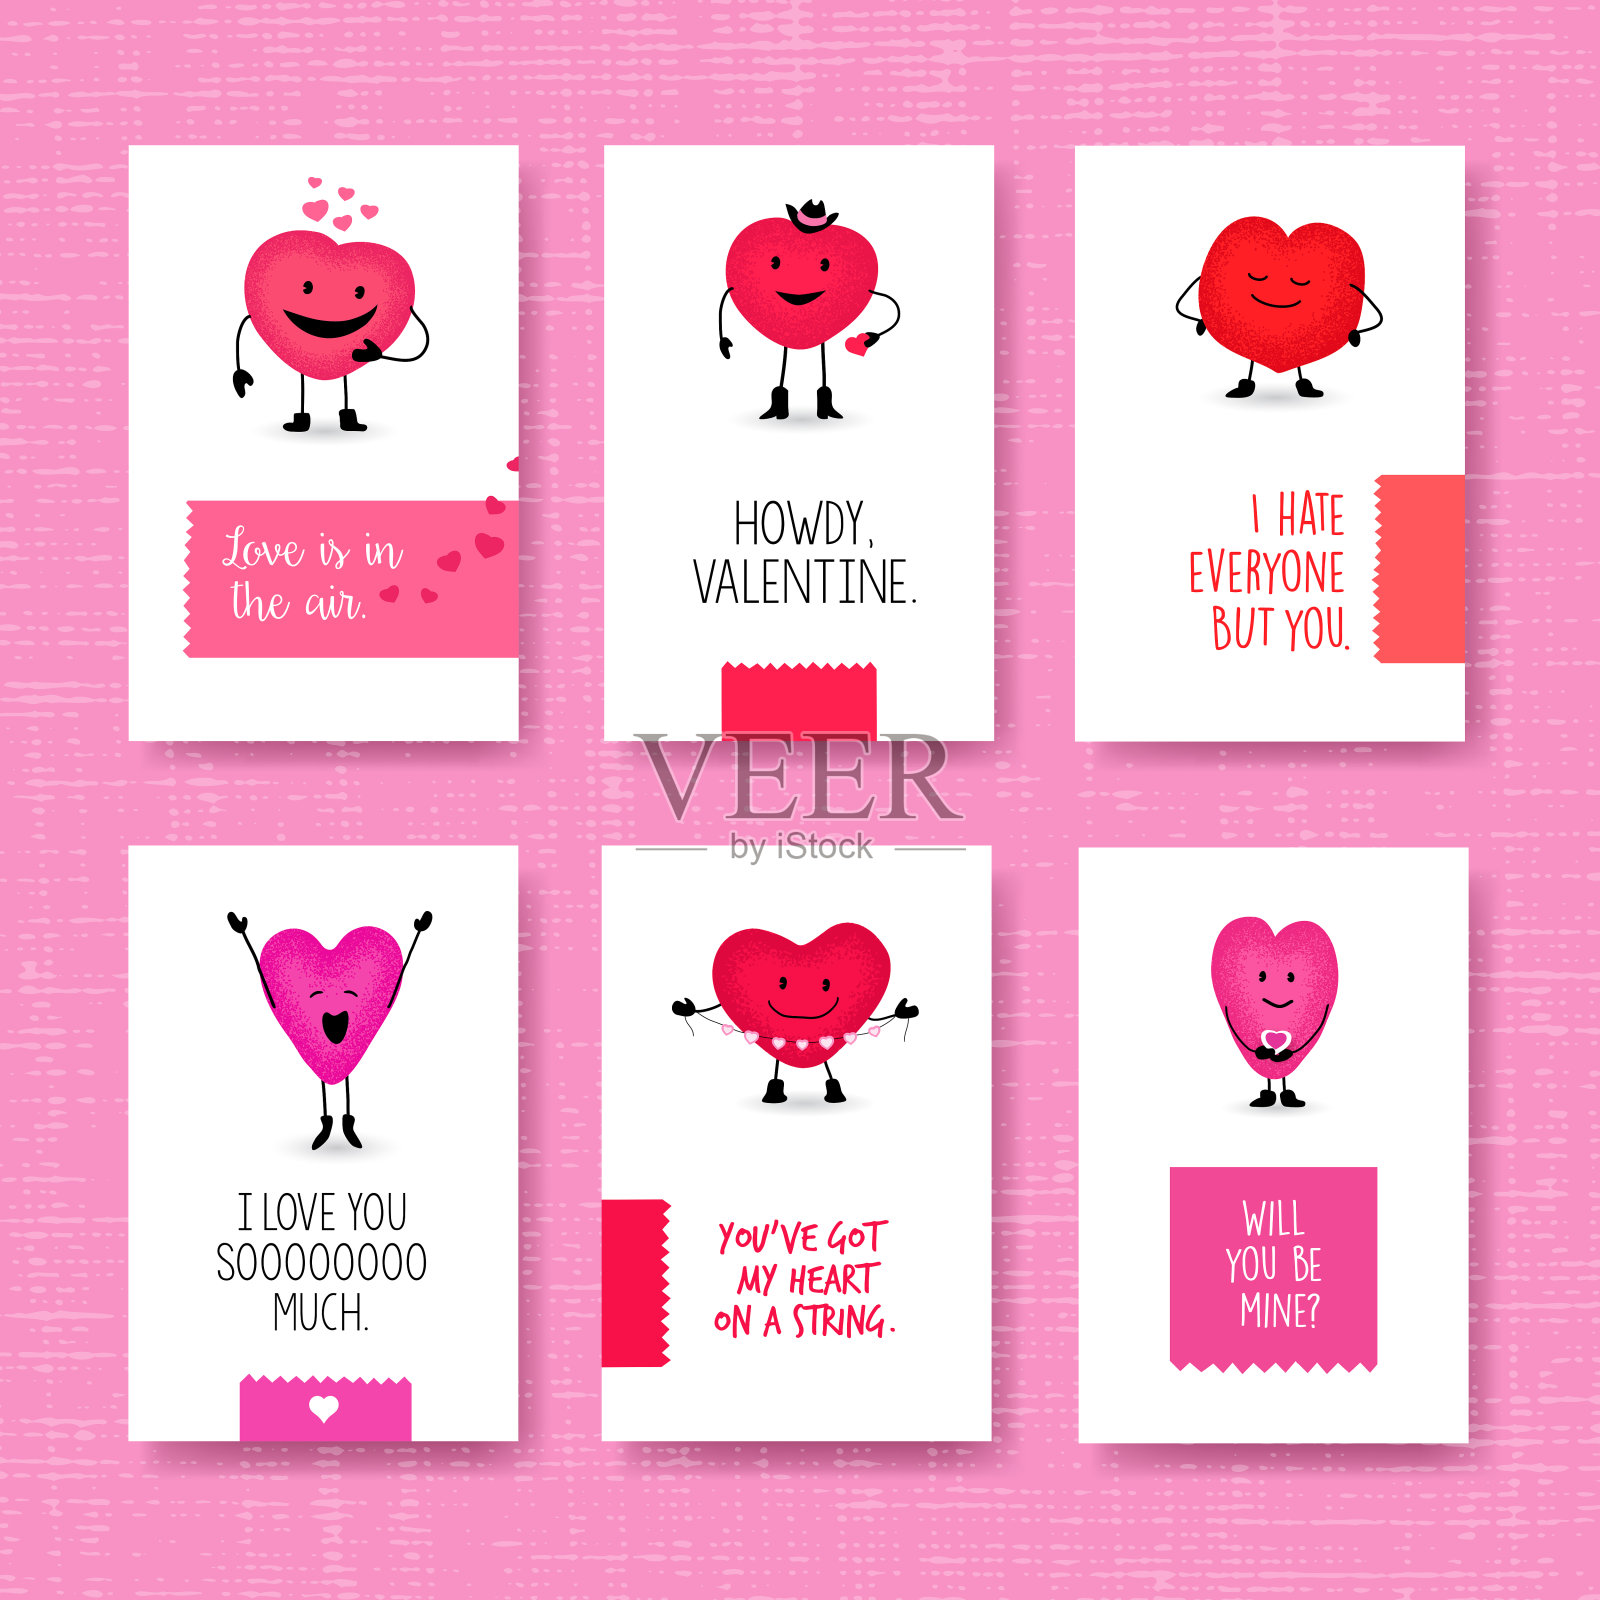 一套可爱的心形卡通人物的情人节贺卡。设计模板素材